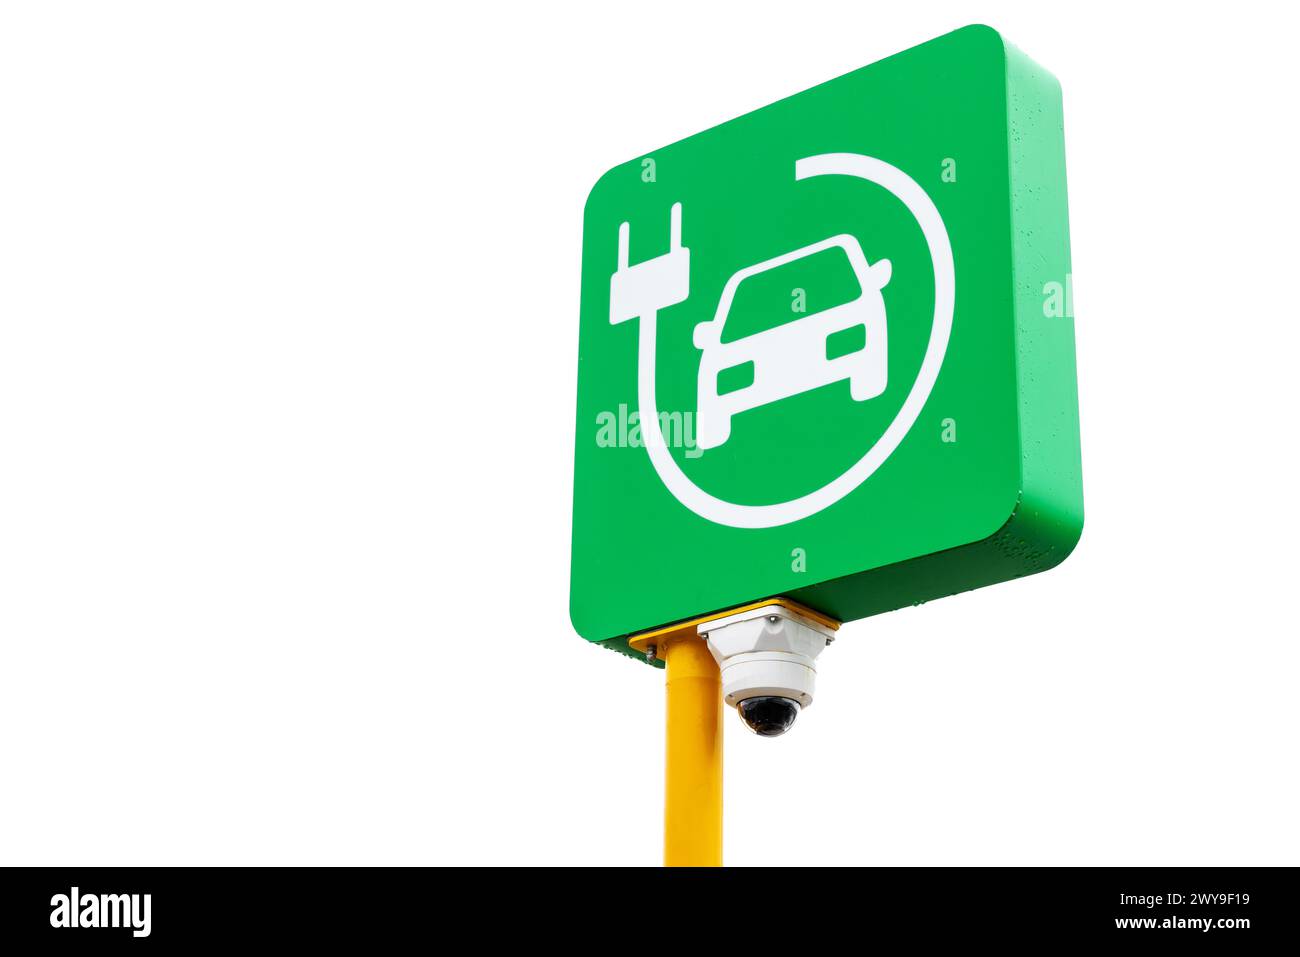 Station de charge pour voitures électriques, panneau routier vert avec caméra CCTV intégrée isolé sur fond blanc Banque D'Images